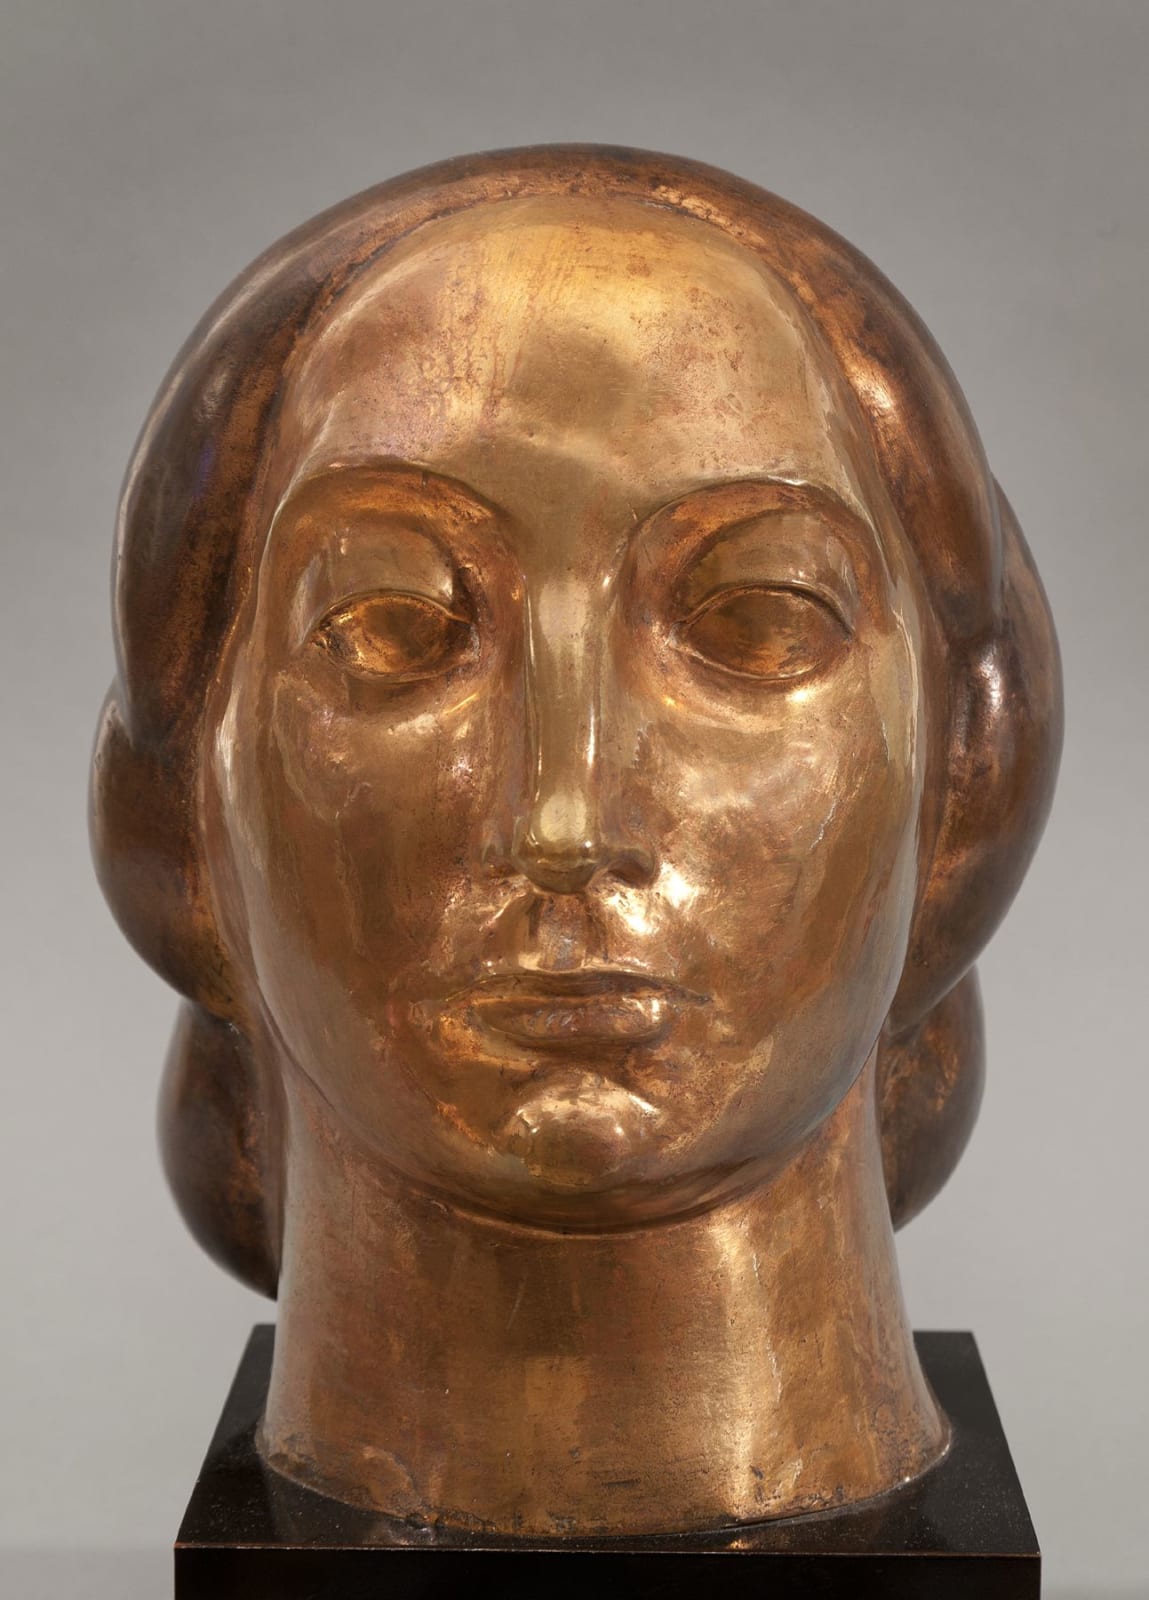 Gaston Lachaise, Head of a Woman, 1923